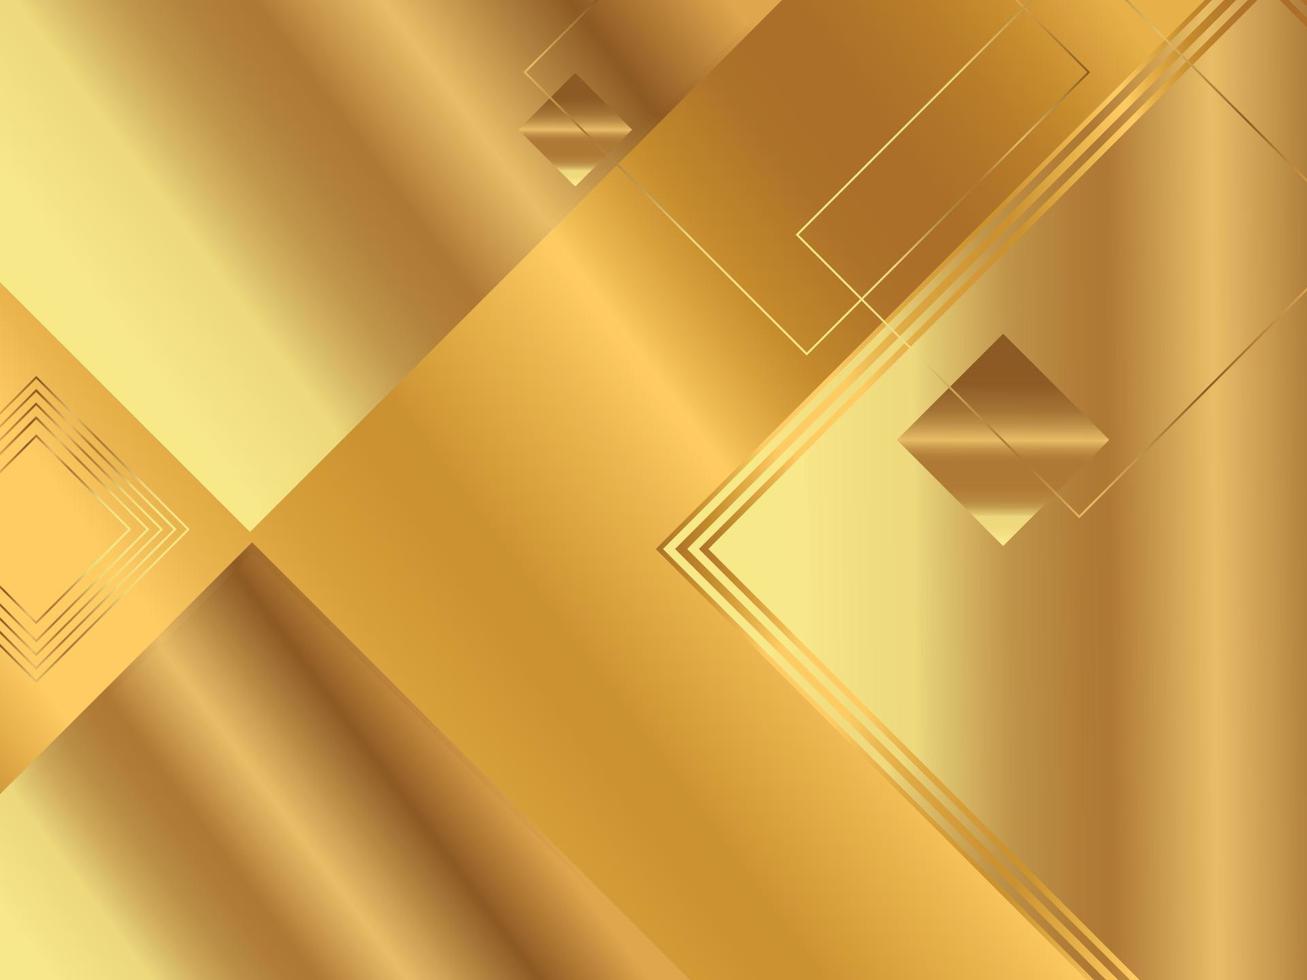 Golden background image modern design concept vector